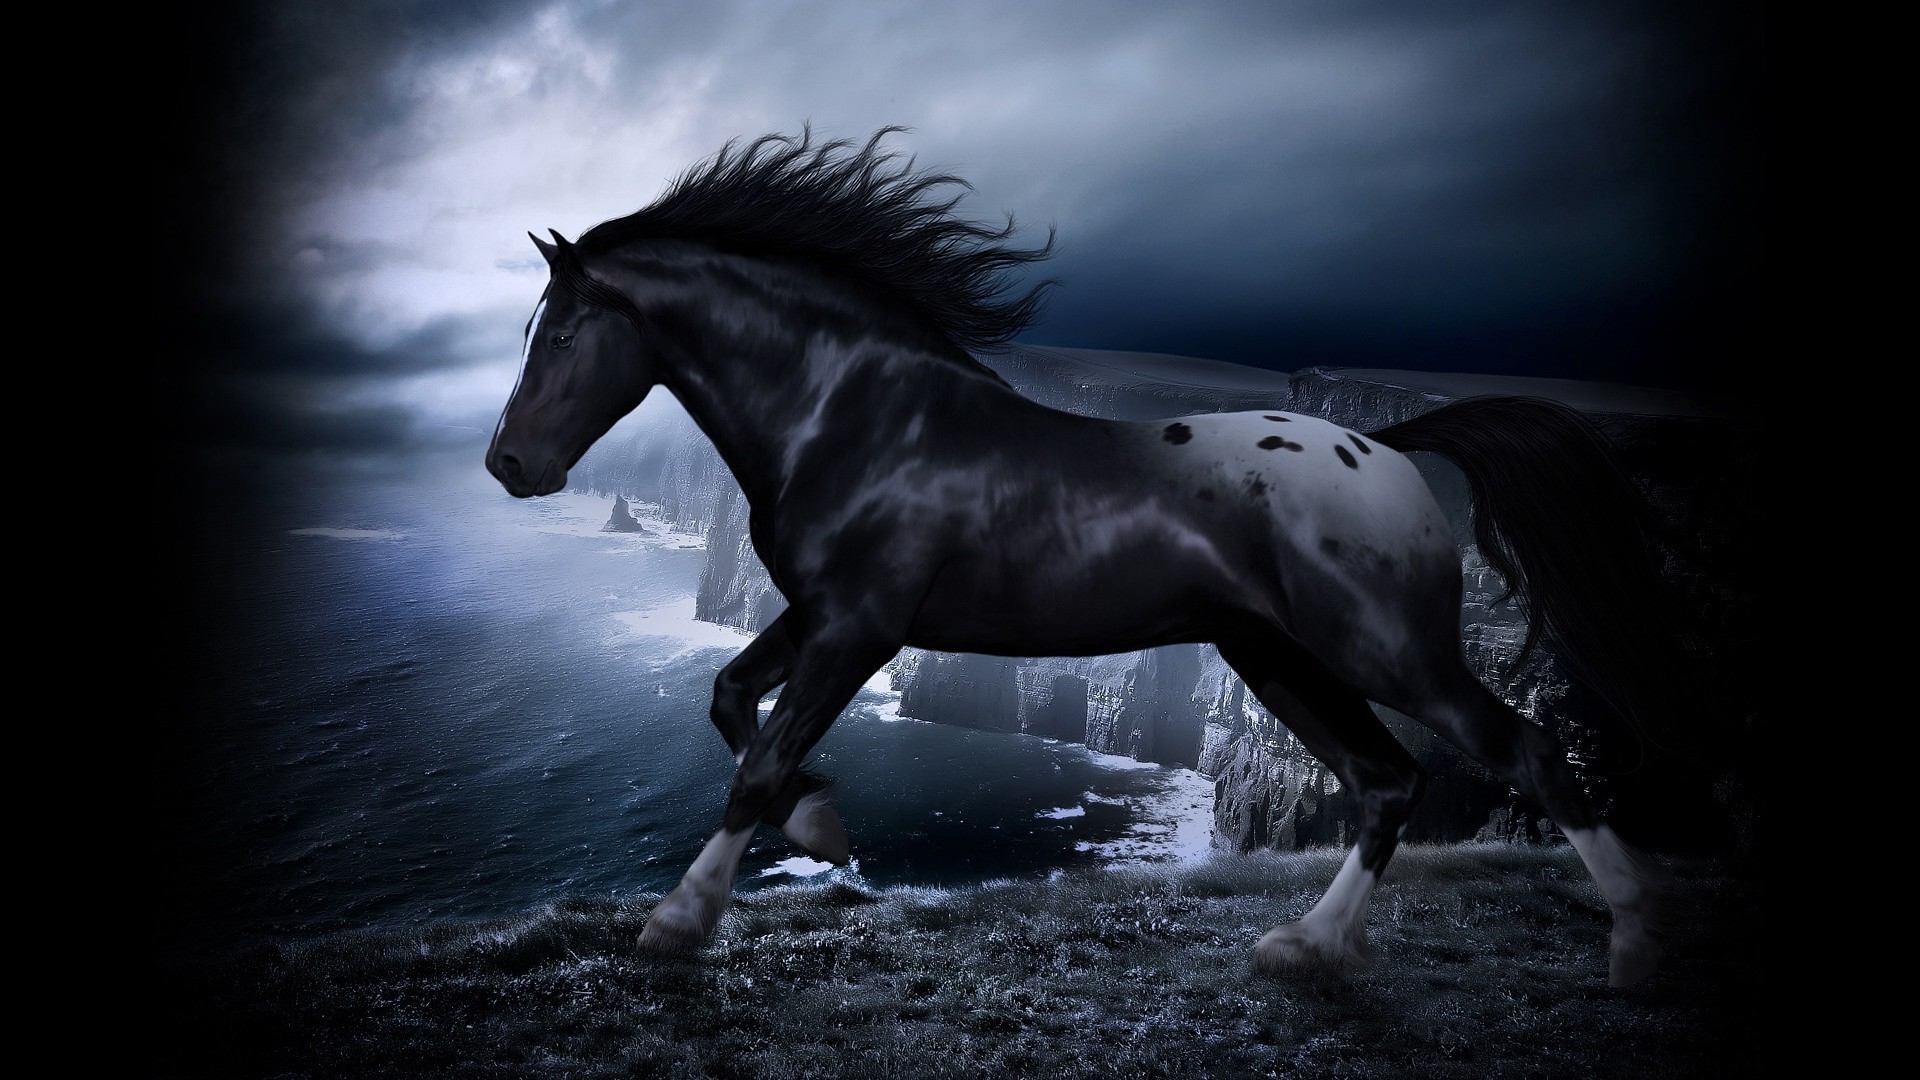 лошади конница маре лошадь млекопитающее монохромный жеребец коневодство мустанг сидит конный один пони животное скаковая лошадь мане гонки